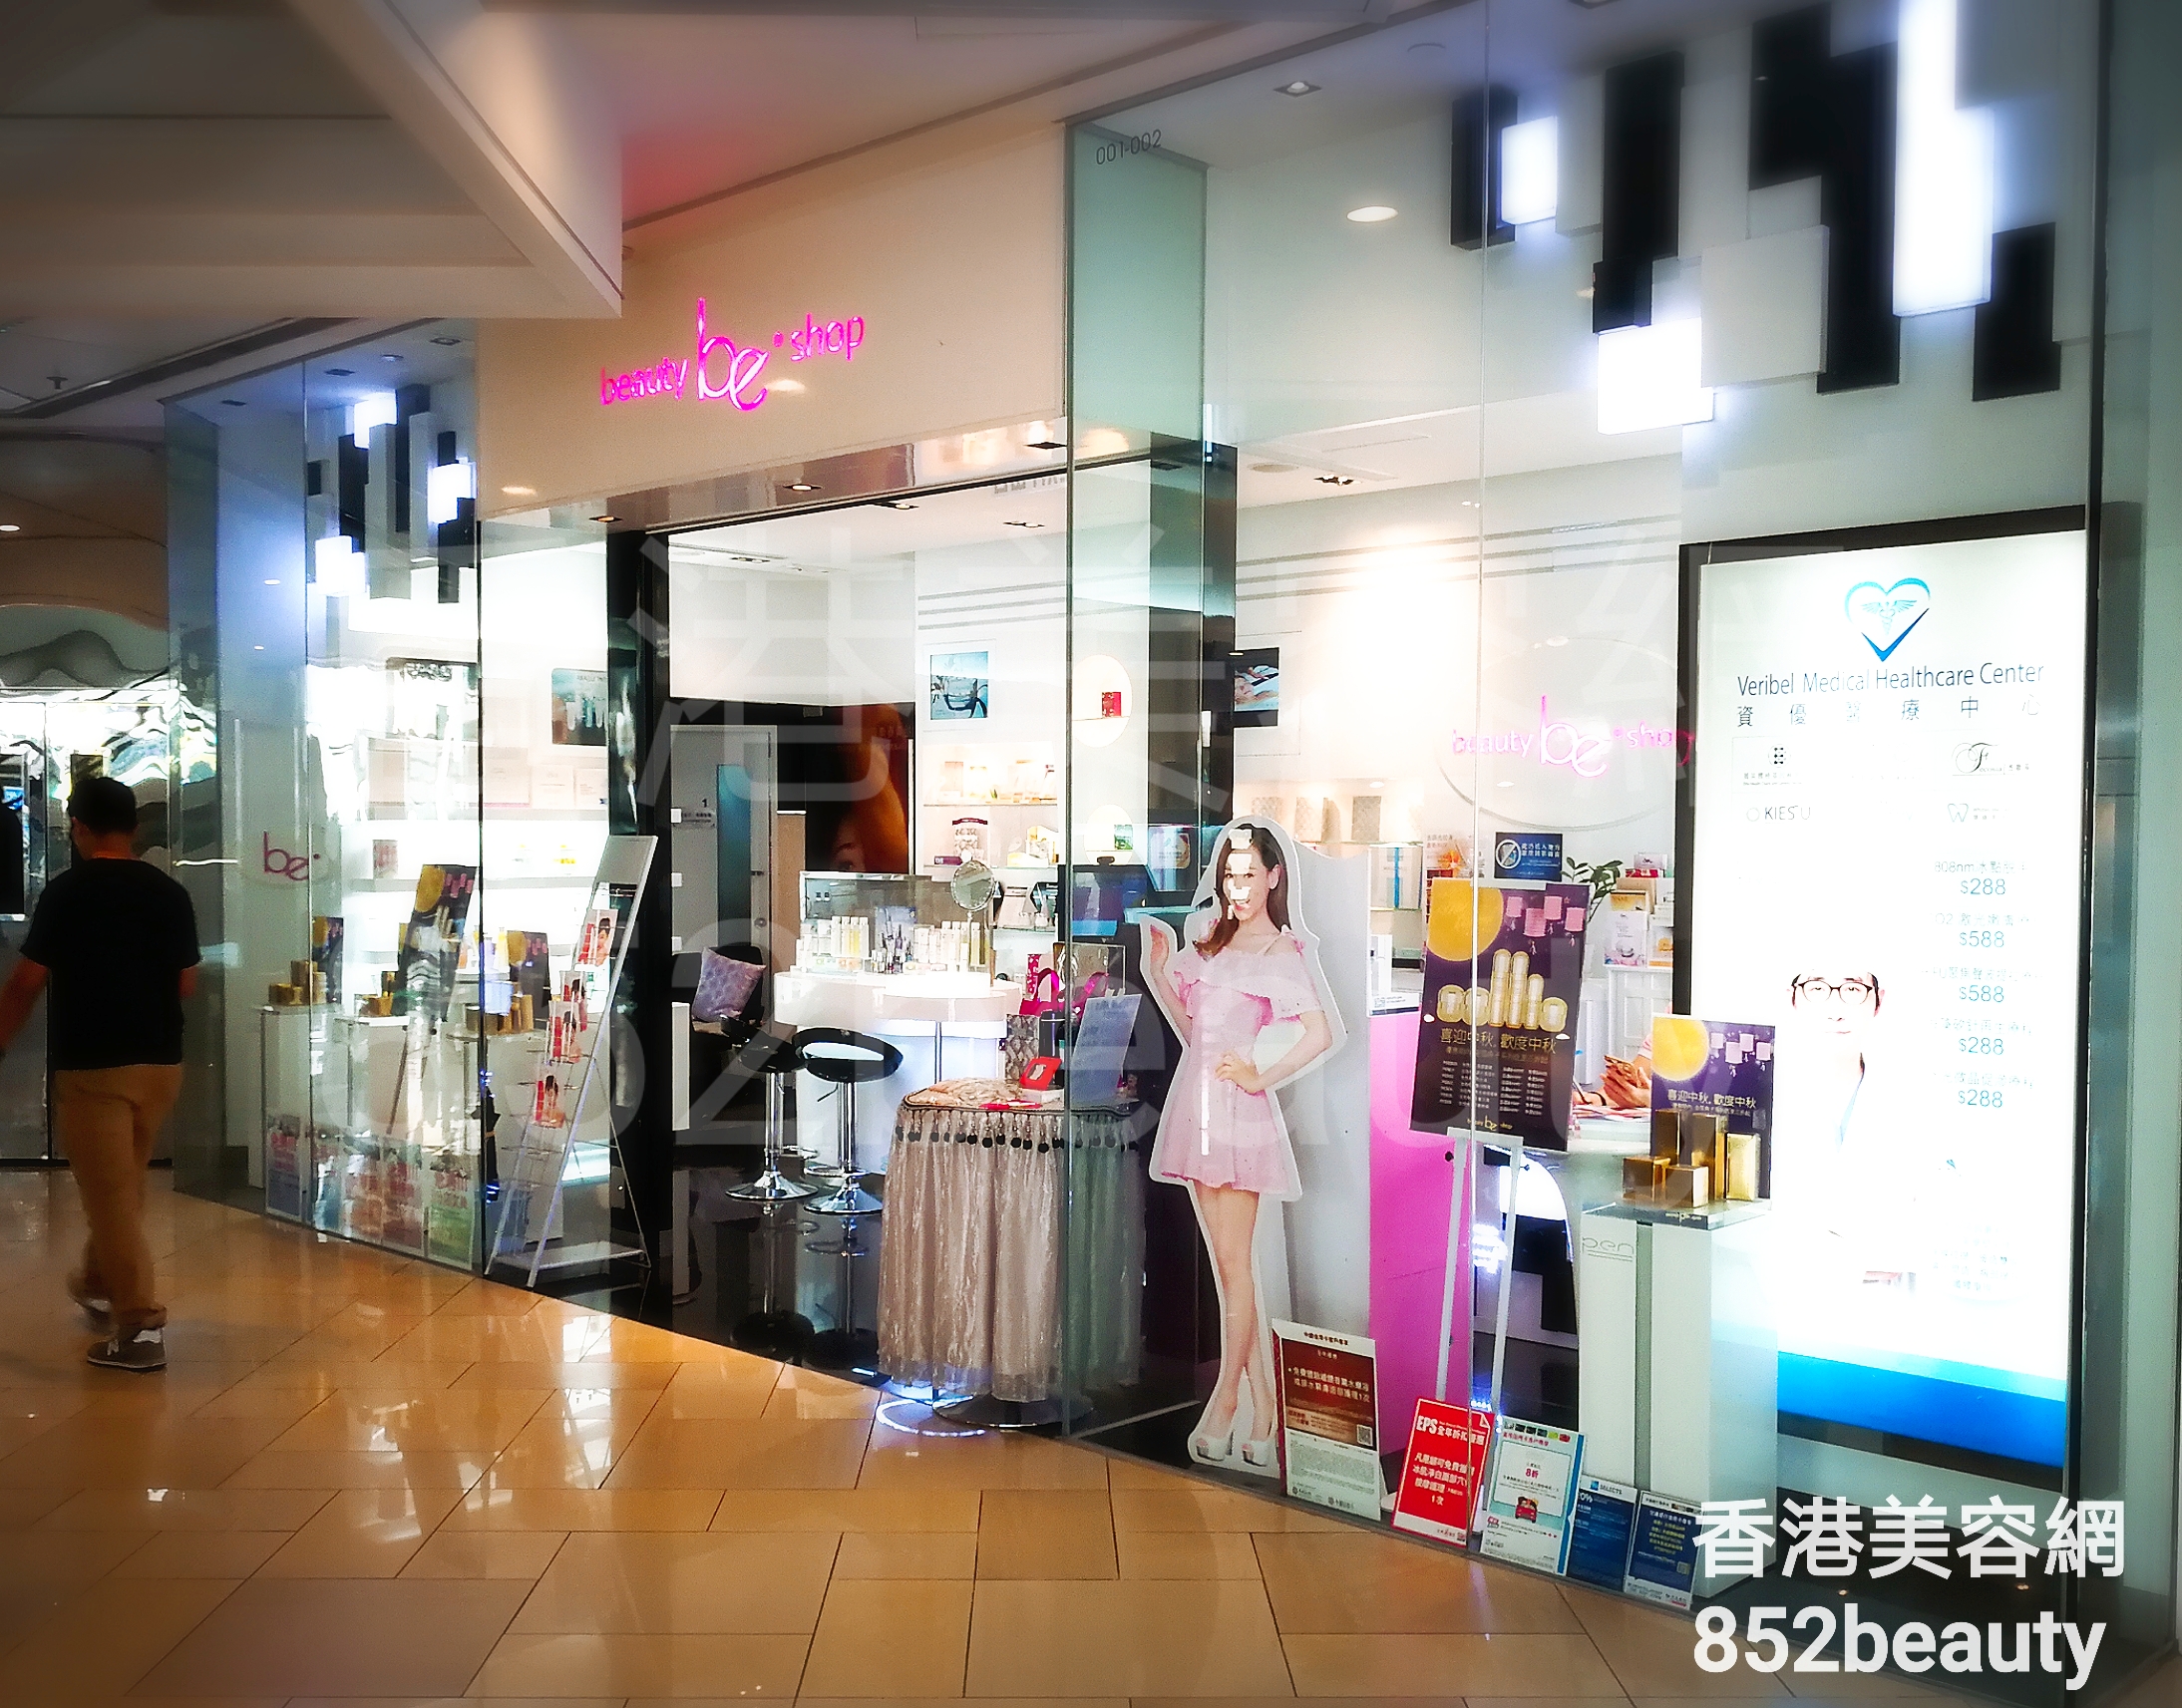 美容院 Beauty Salon: be beauty shop (港運城)